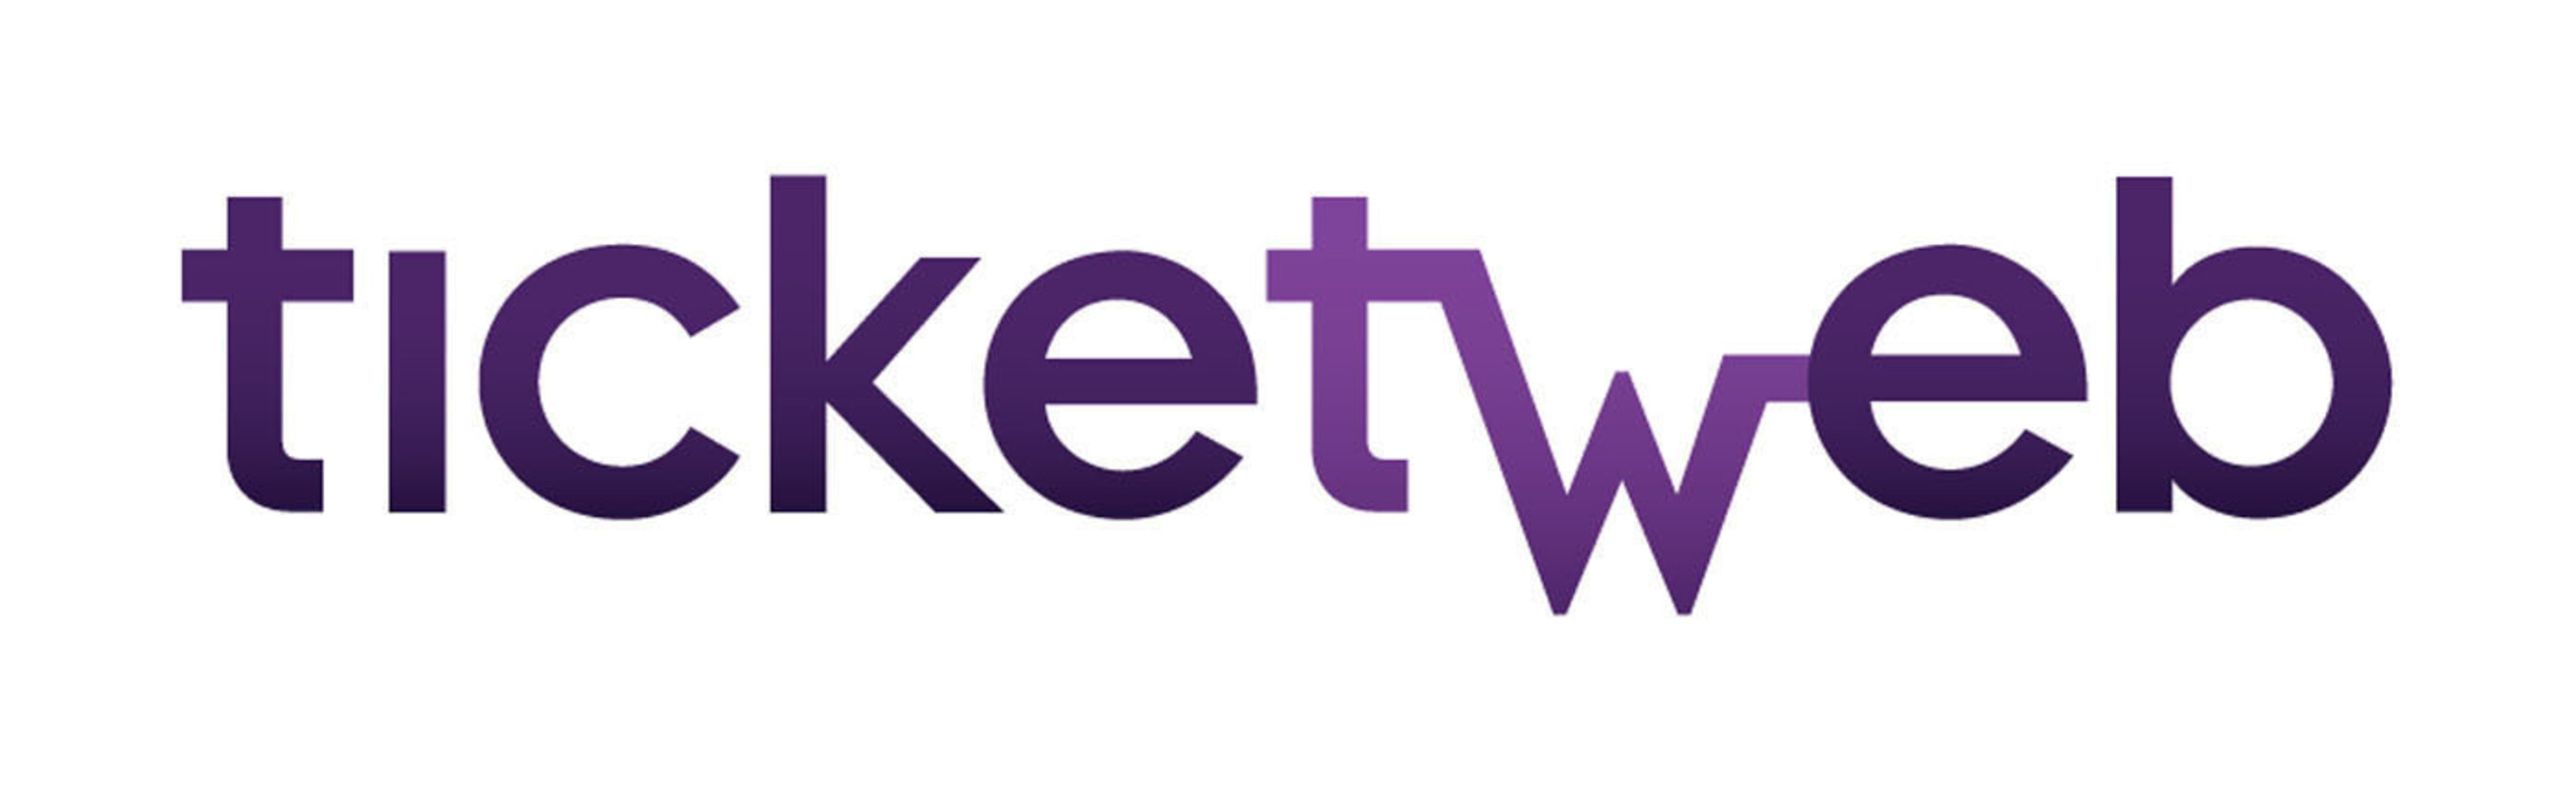 TicketWeb Logo. (PRNewsFoto/TicketWeb) (PRNewsFoto/)